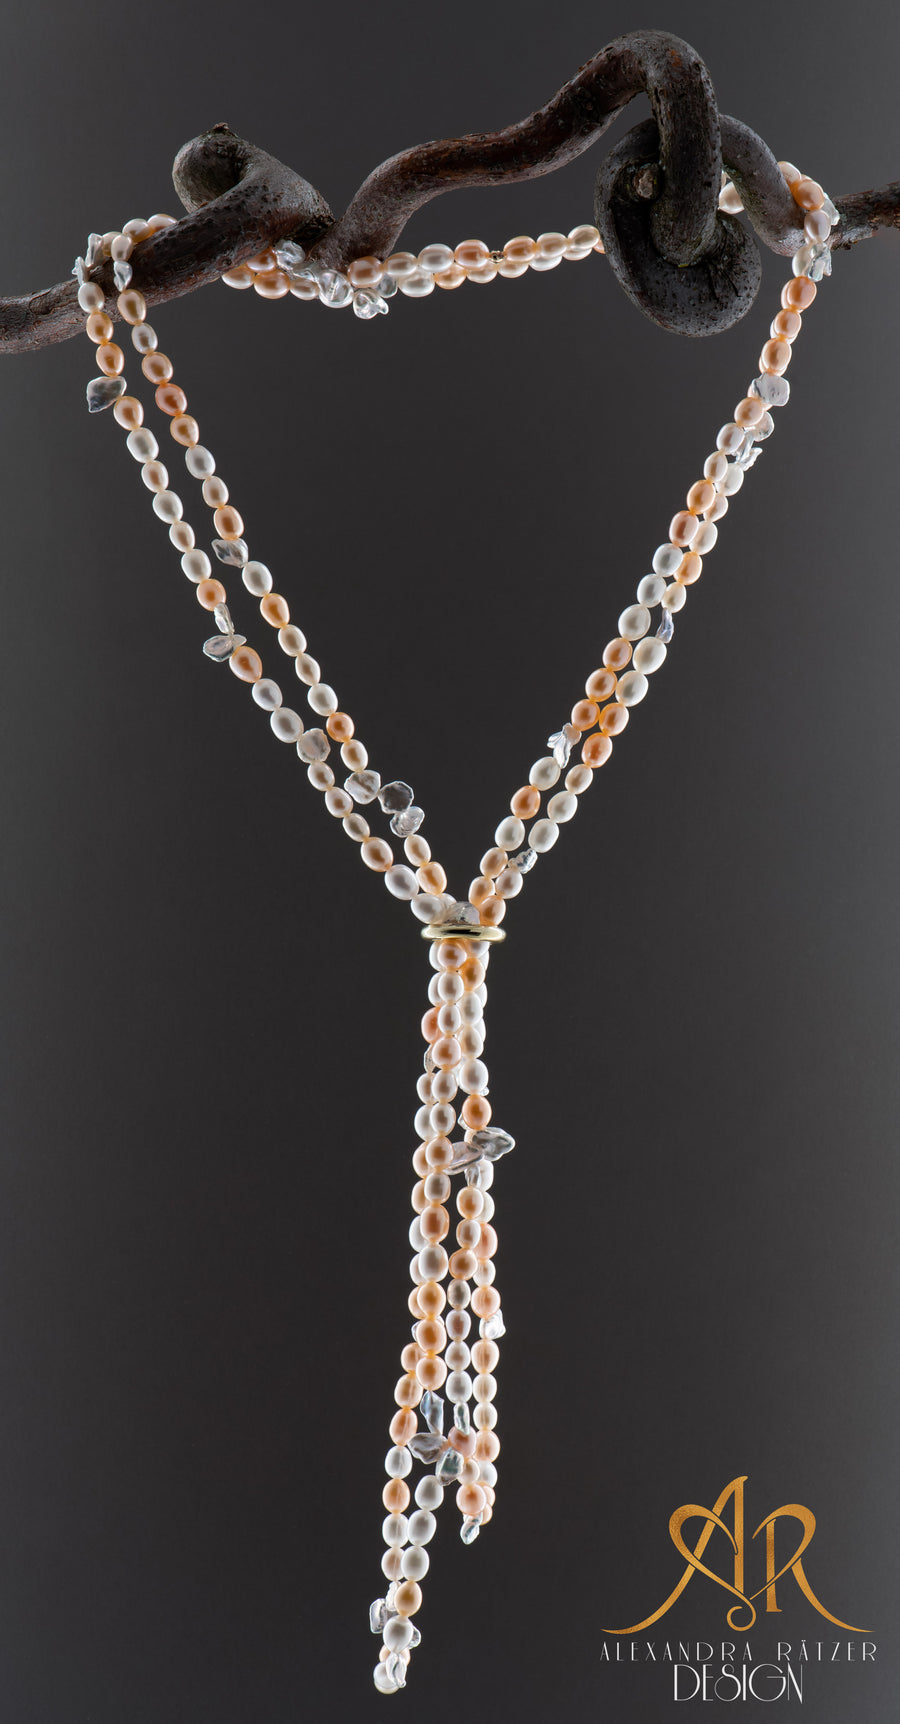 sehr lange barocke Perlenkette 1920er Stil in Apricot und Metallic weisser Farbe. Reis und Kornflake Keshi Perlen